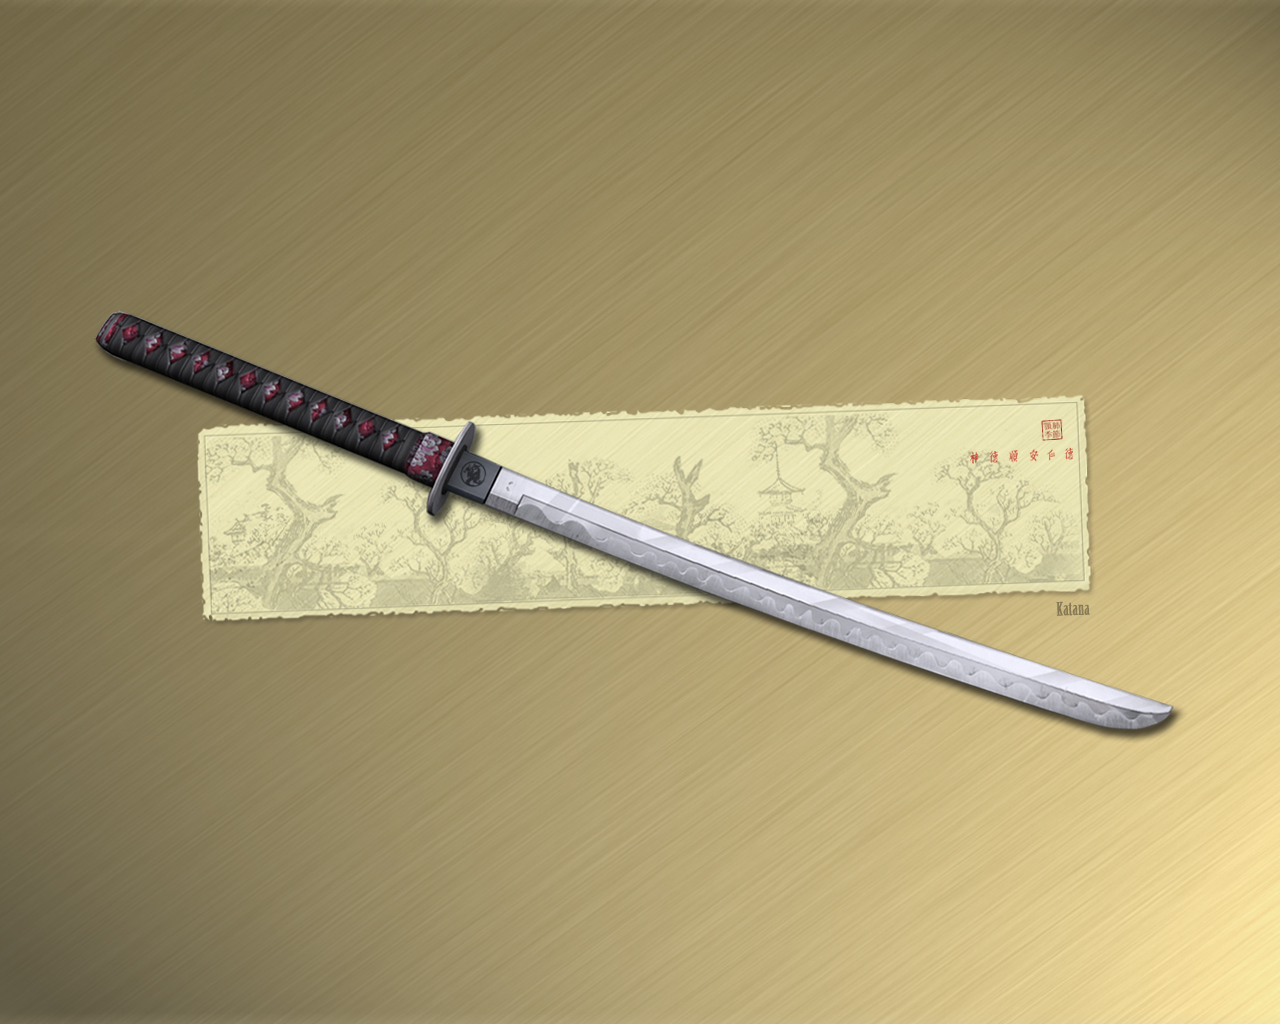 Man Made Sword 1280x1024